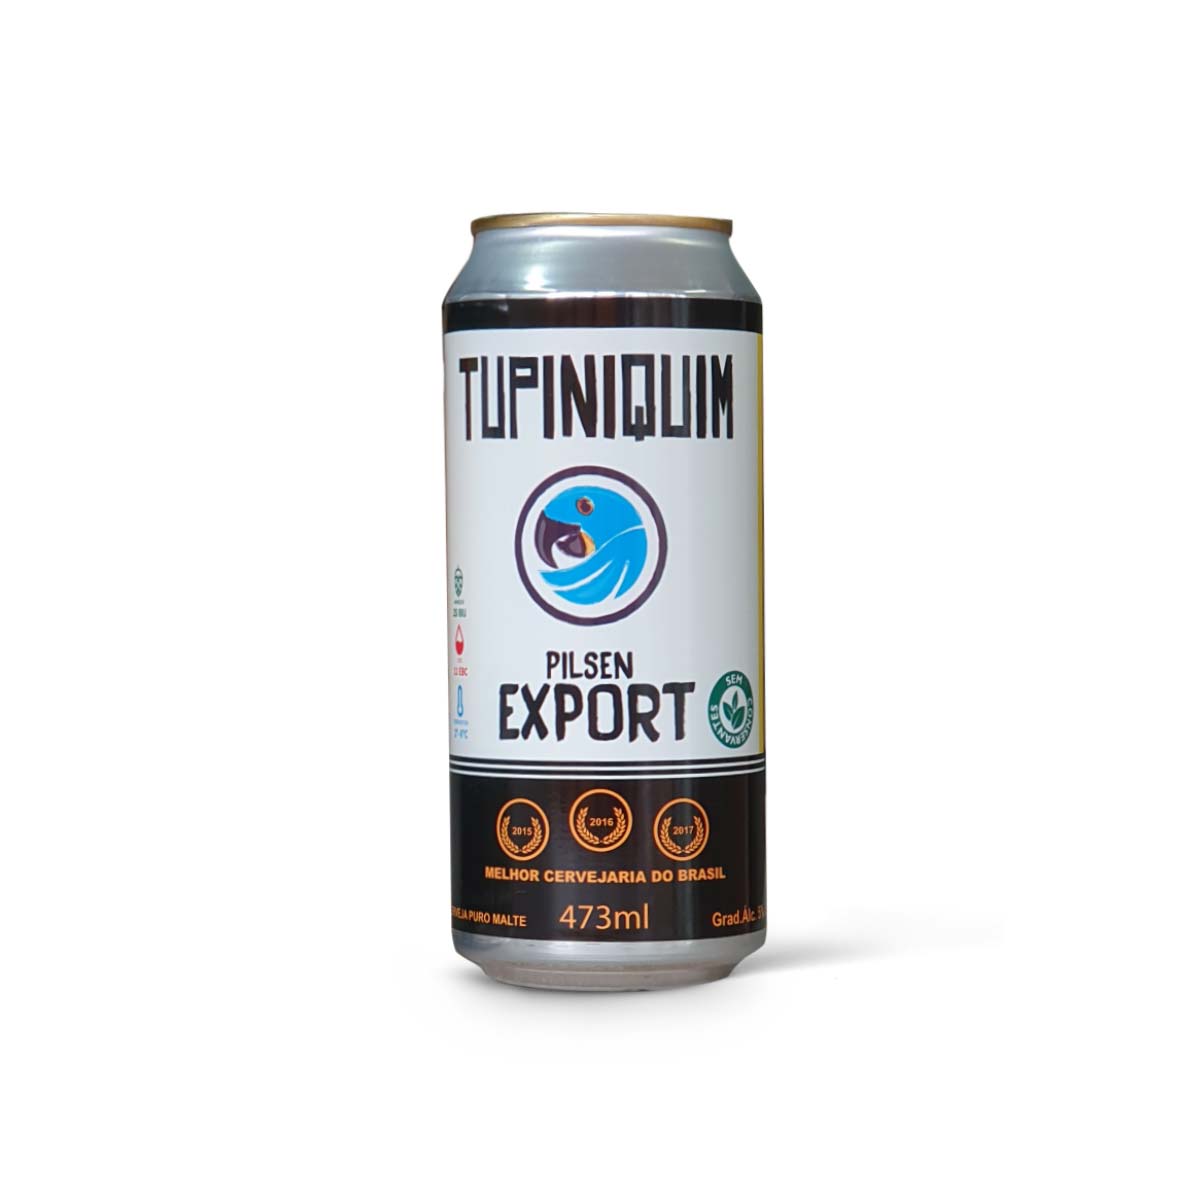 Tupiniquim Export 473ml lata